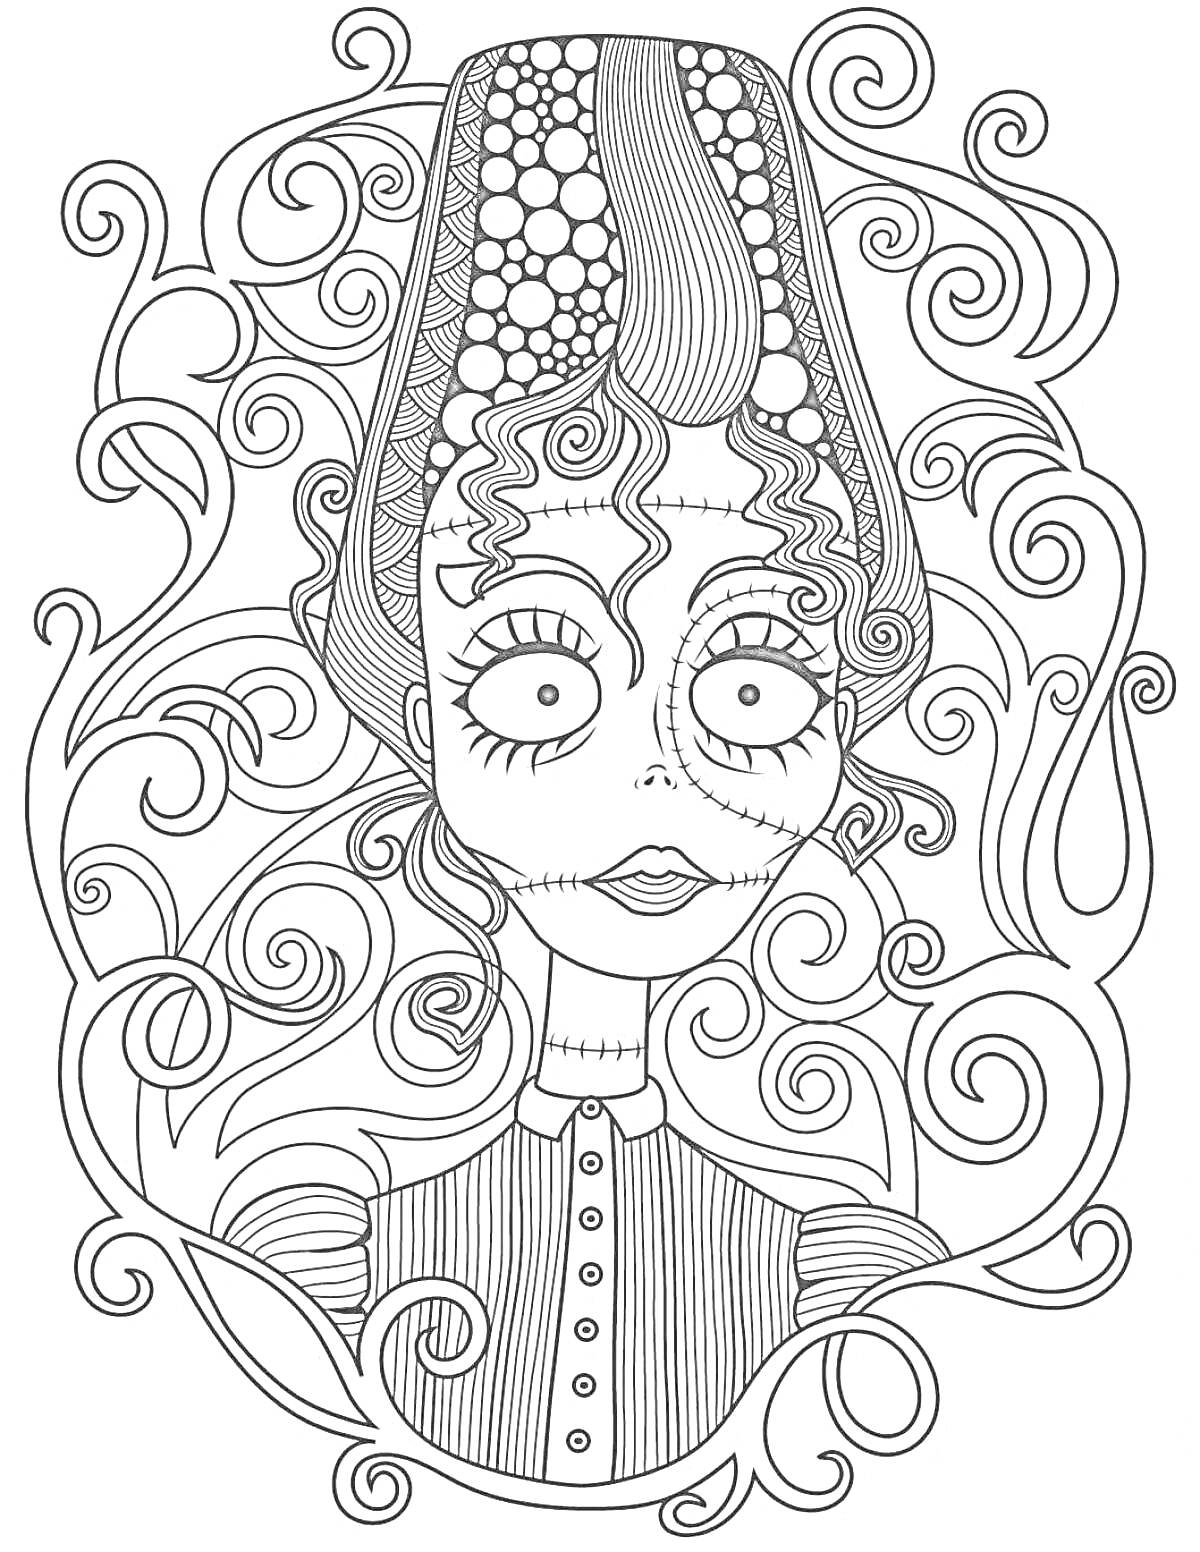 Раскраска Женский персонаж в высокой прическе со шрамами, декорированный в вихревом узоре